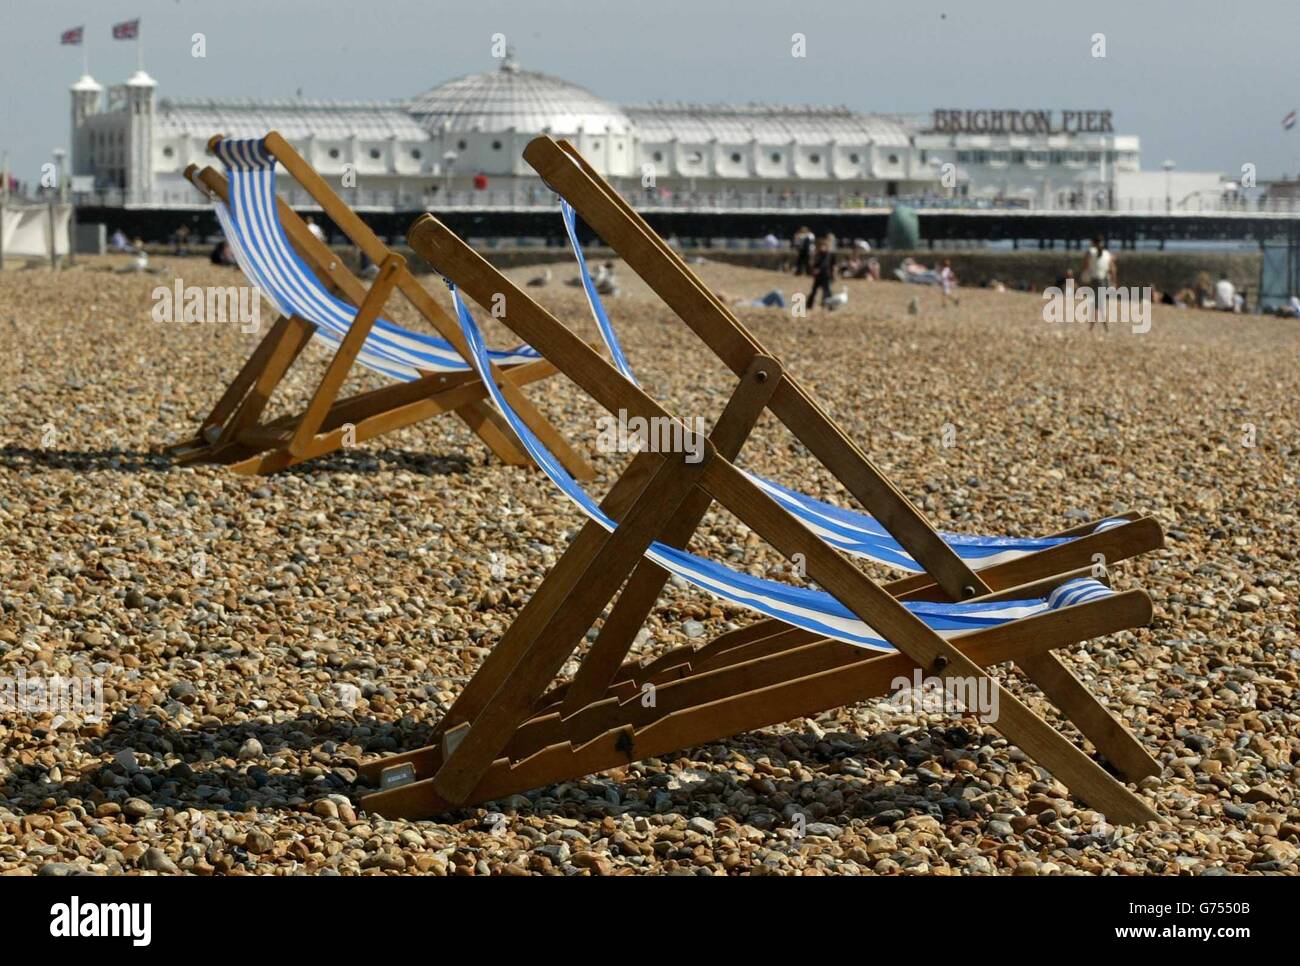 C'è molto spazio a disposizione sulla spiaggia di Brighton, nel Sussex orientale, a differenza di questo periodo dell'anno scorso, quando sono state registrate temprature da record. Foto Stock